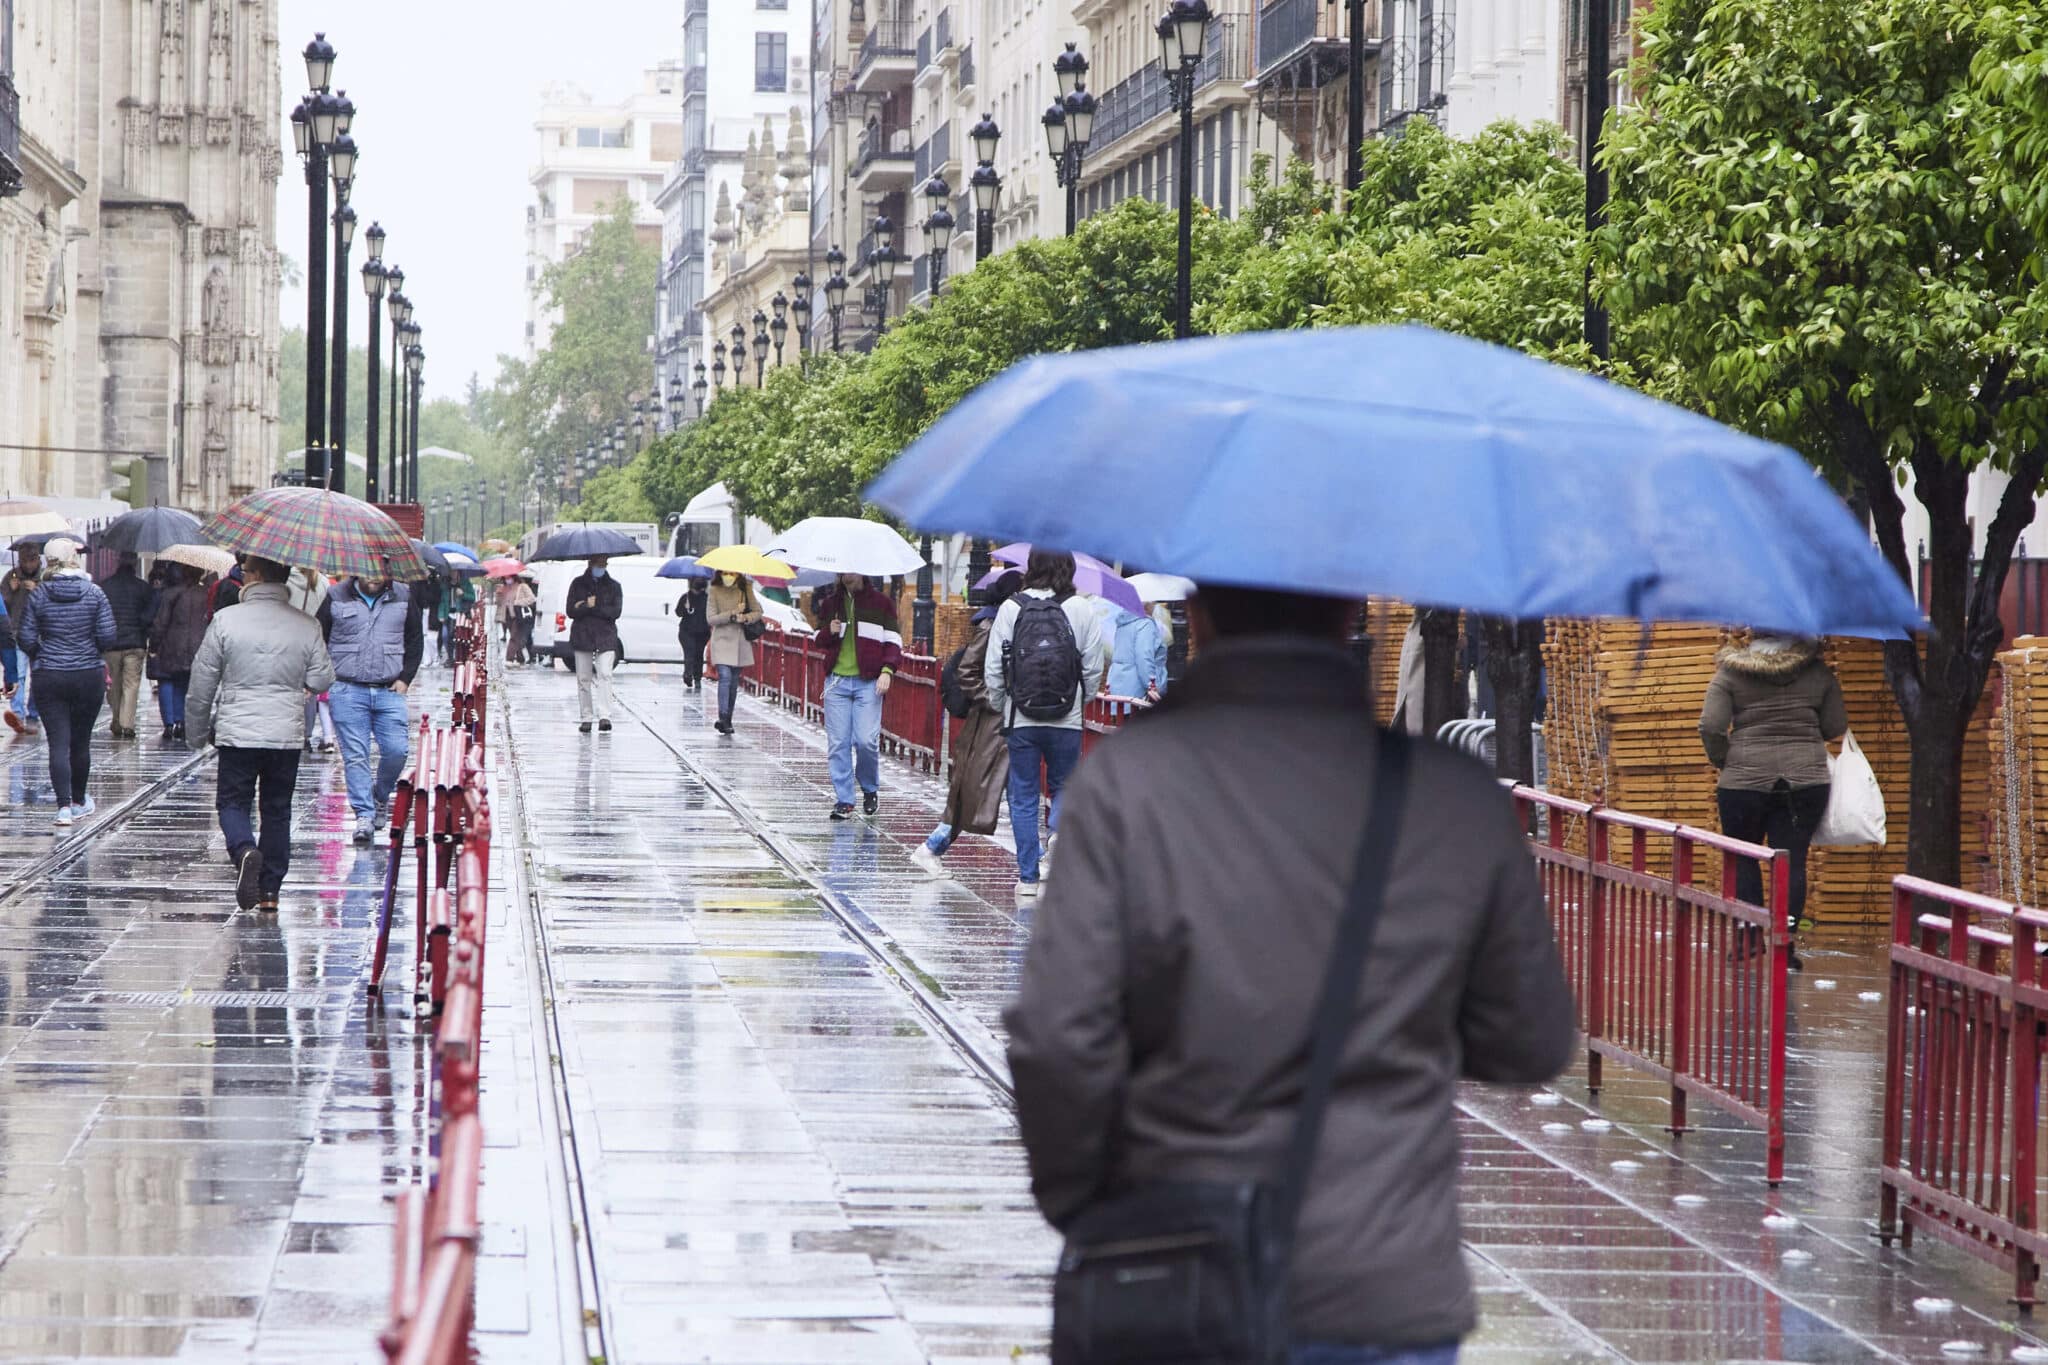 Varias personas pasean con sus paraguas en Sevilla